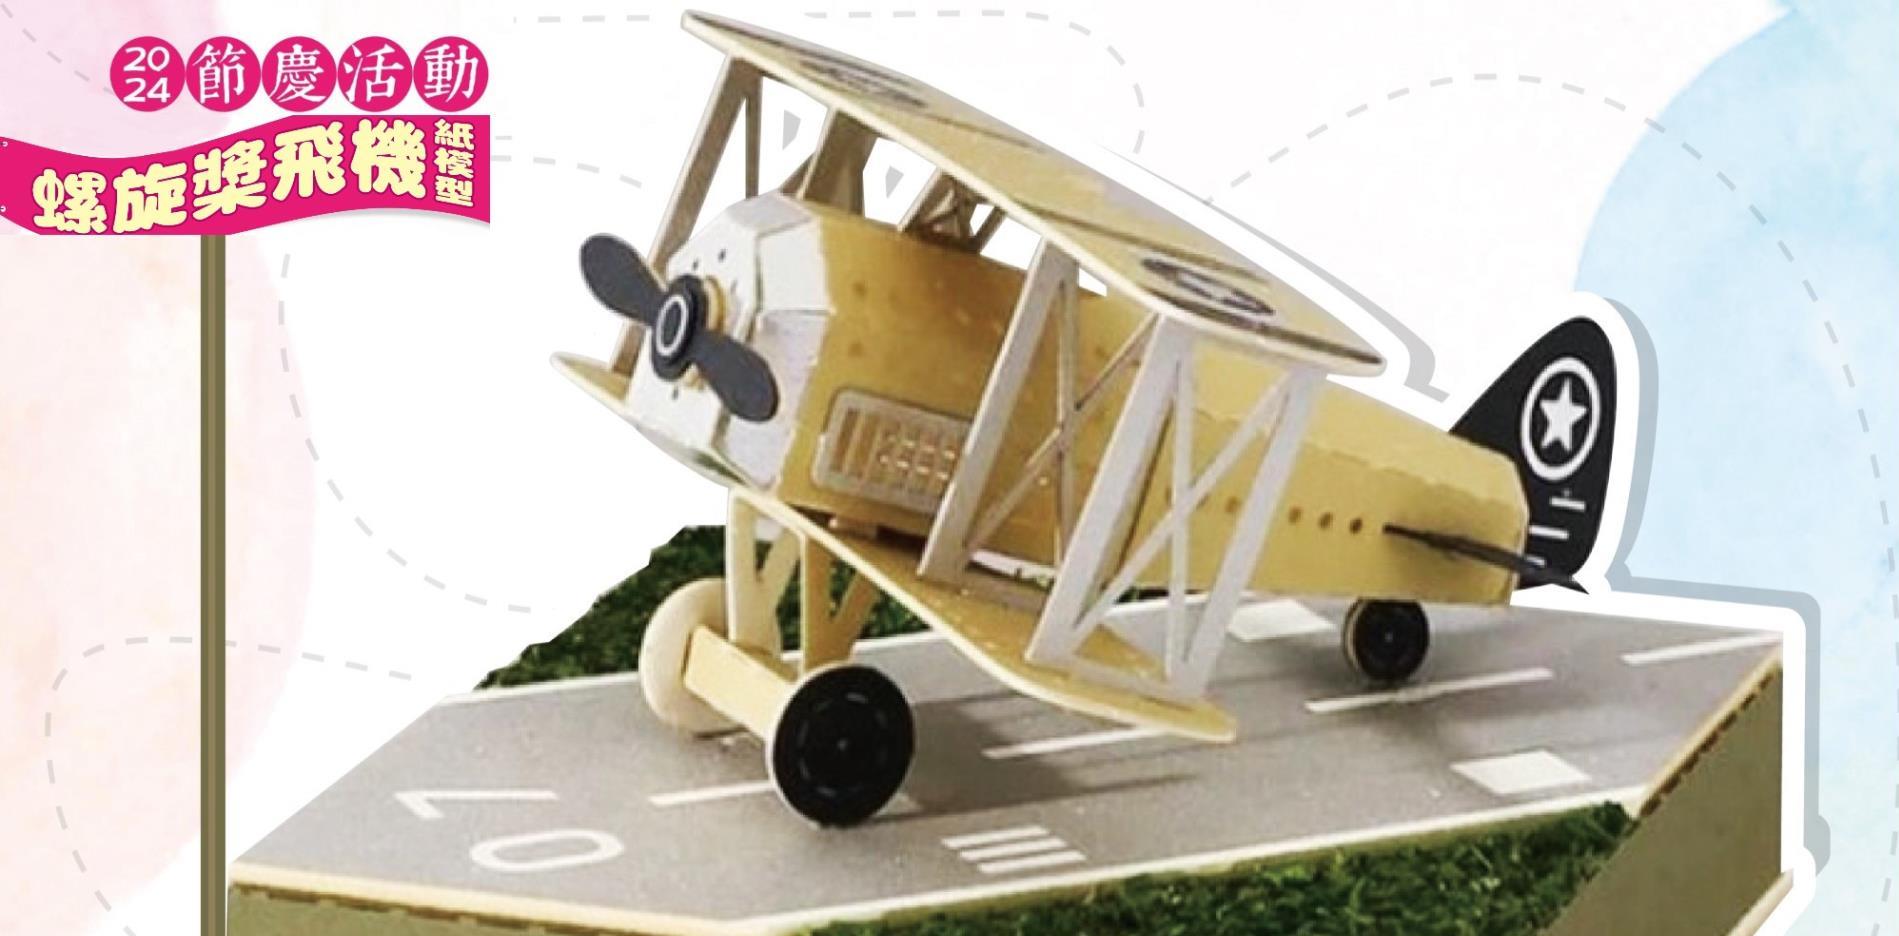 06.29(六)節慶活動－螺旋槳飛機紙模型